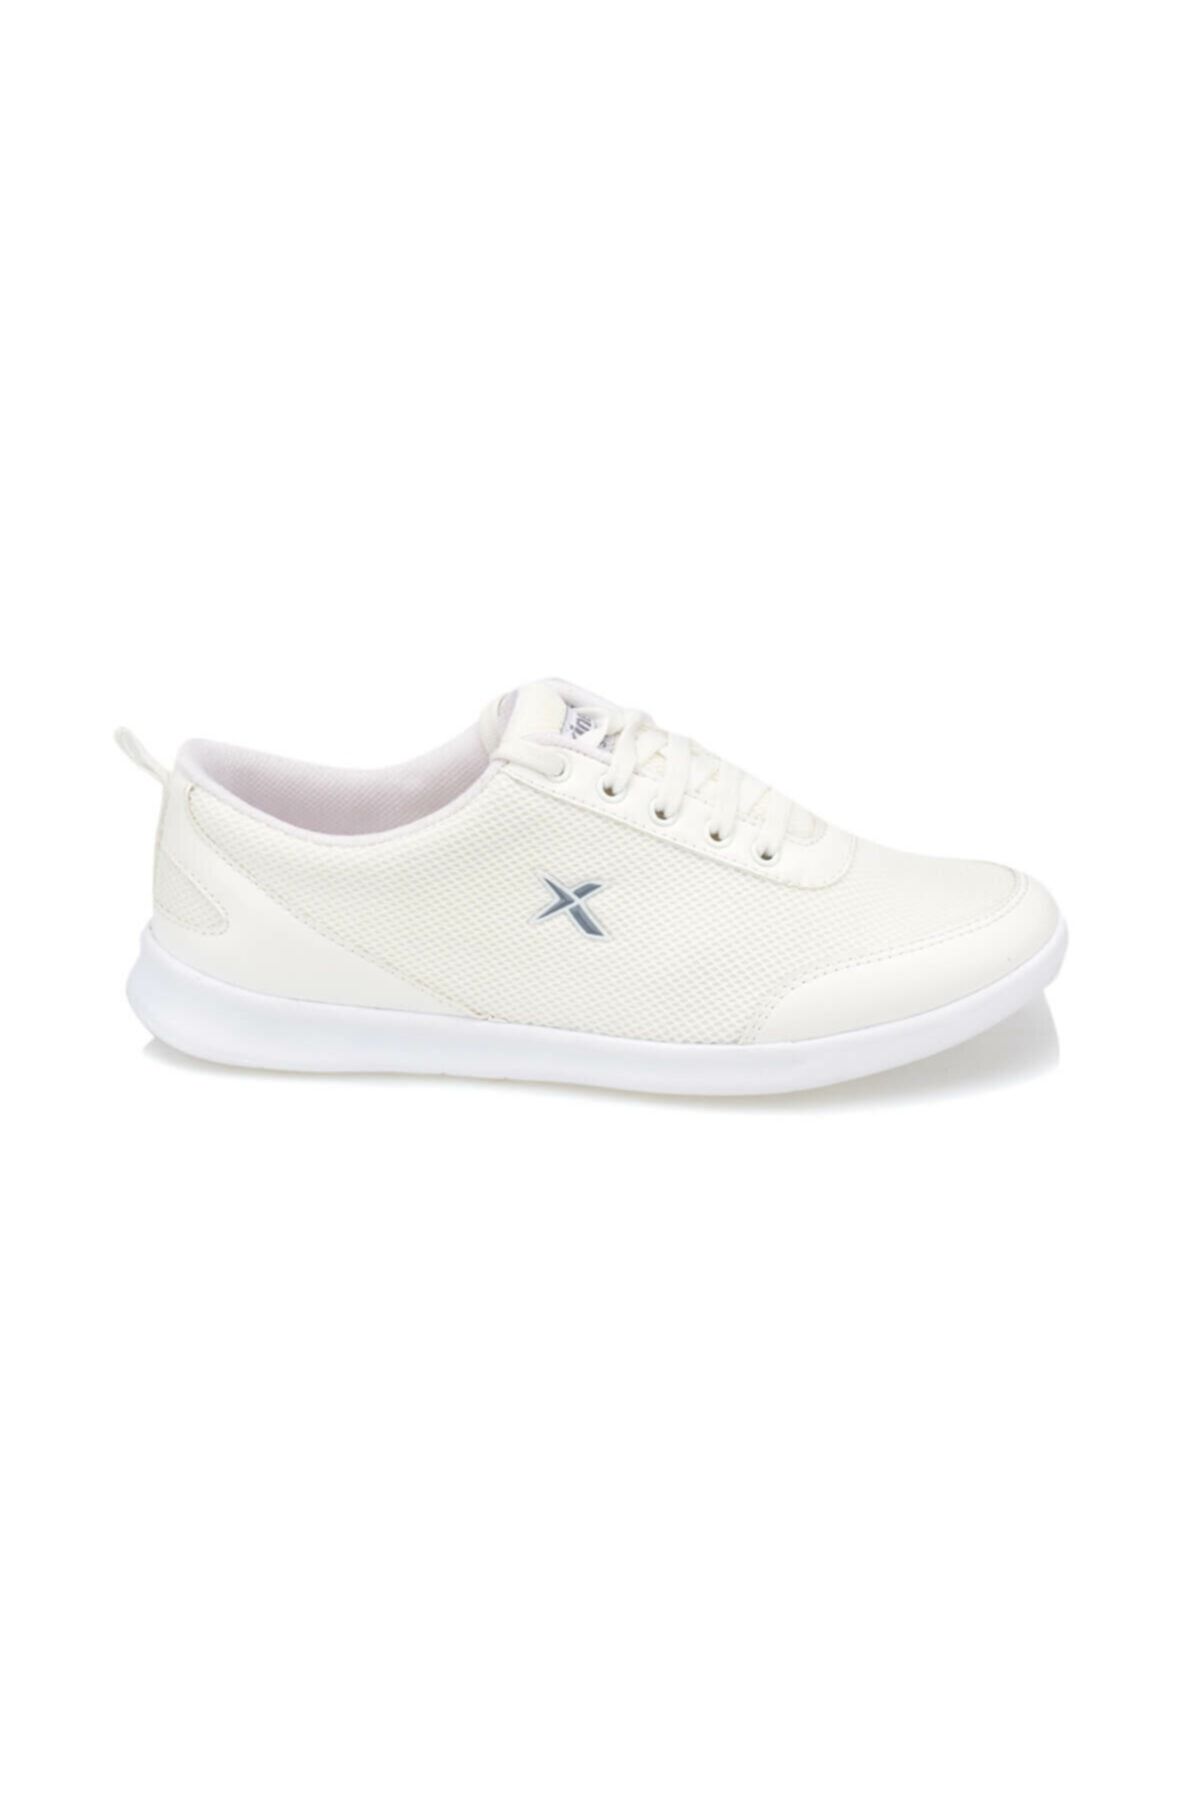 Kinetix Linda Beyaz Kadın Sneaker Ayakkabı 100370544